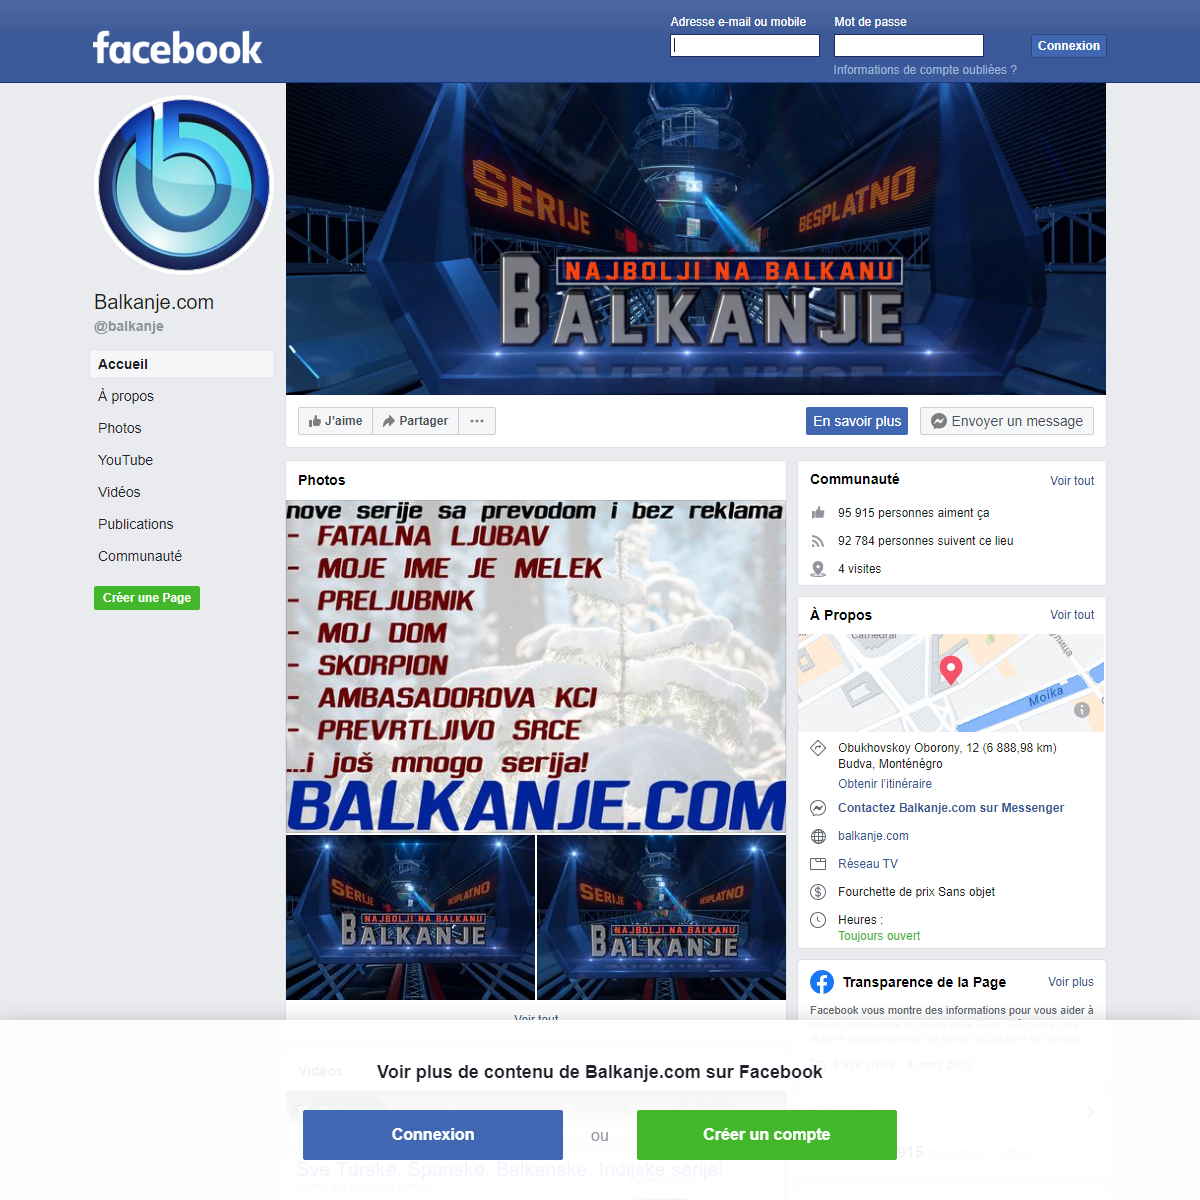 A complete backup of https://fr-fr.facebook.com/balkanje/